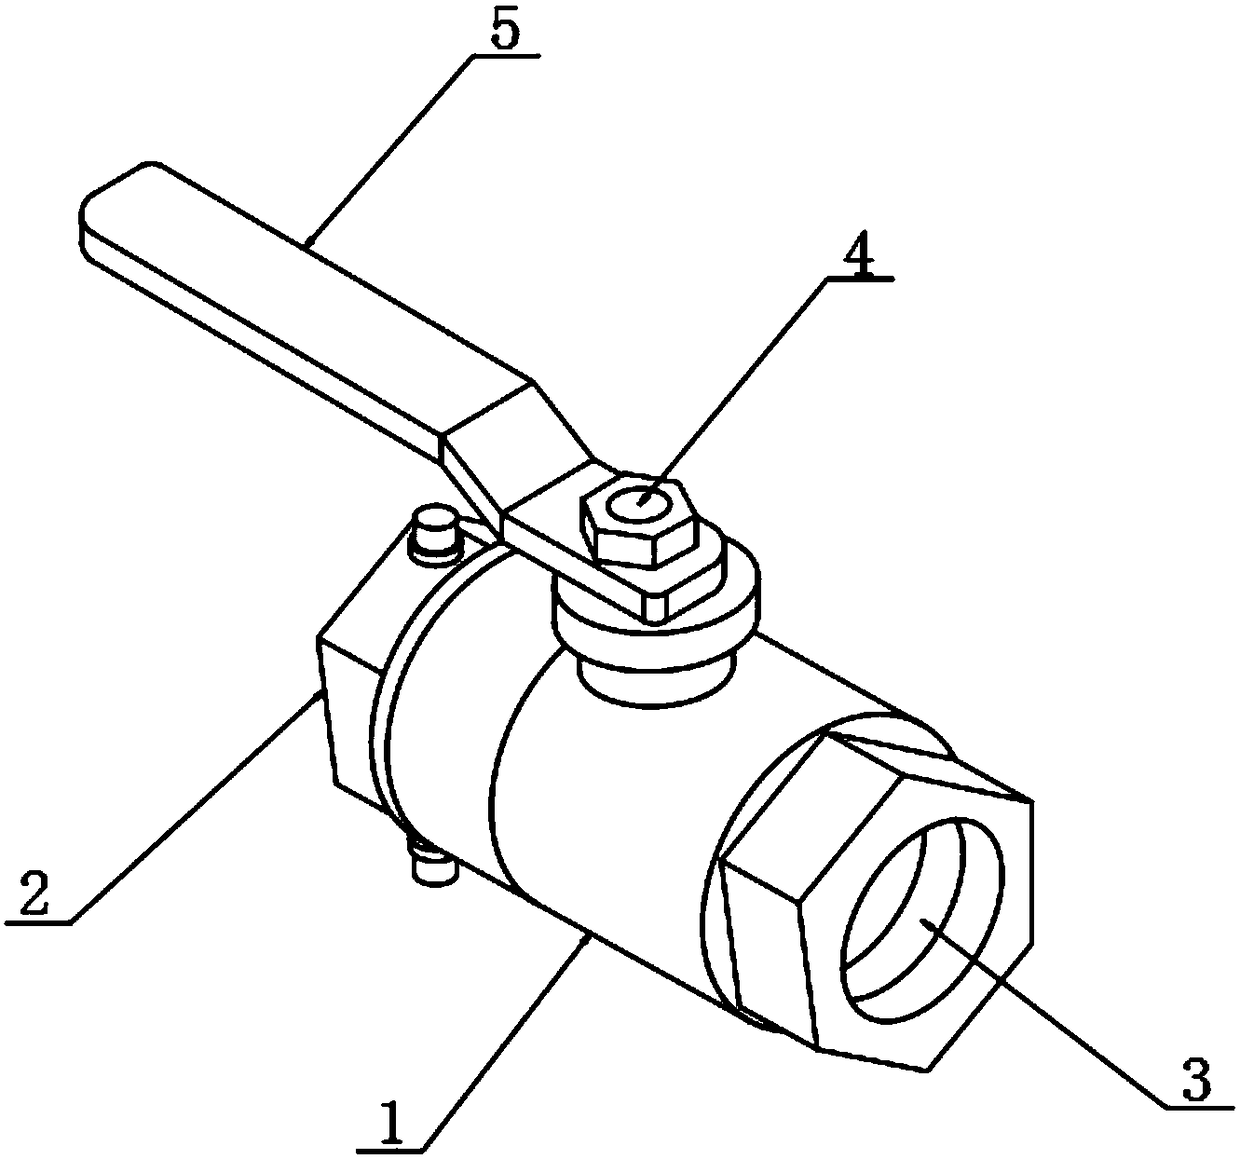 Novel multipurpose ball valve